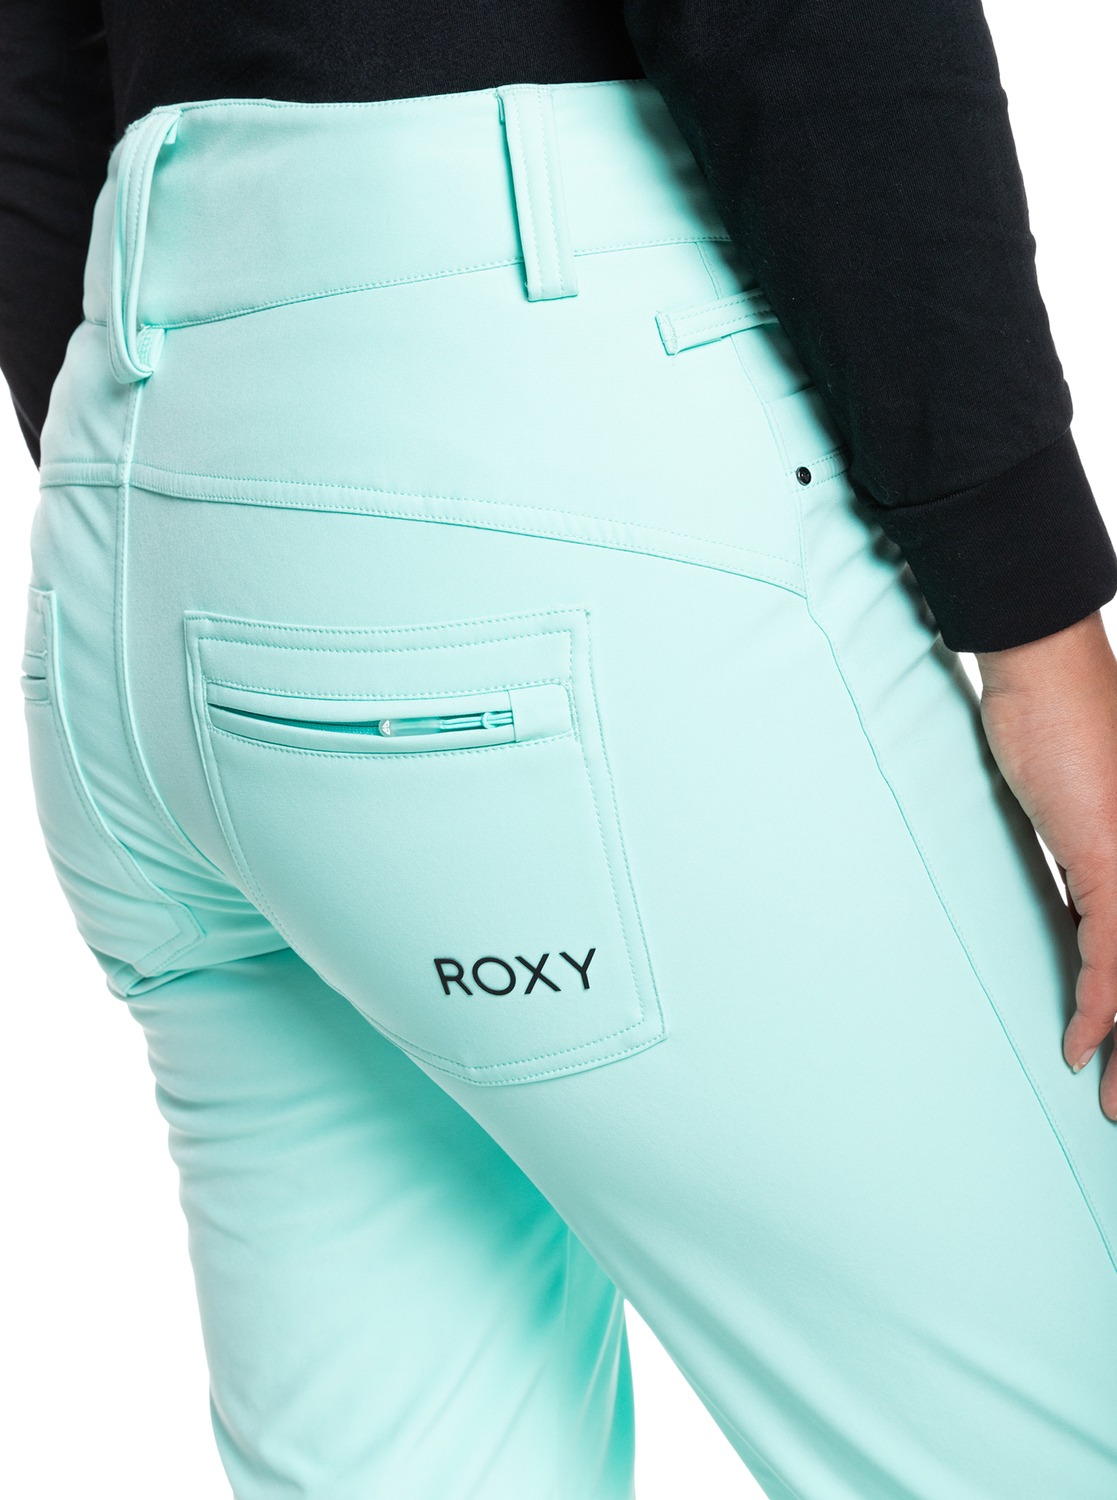 NWT Roxy Dryflight 15k Snowboard Ski Pants Snow Optic Dot Medium Skinny Fit